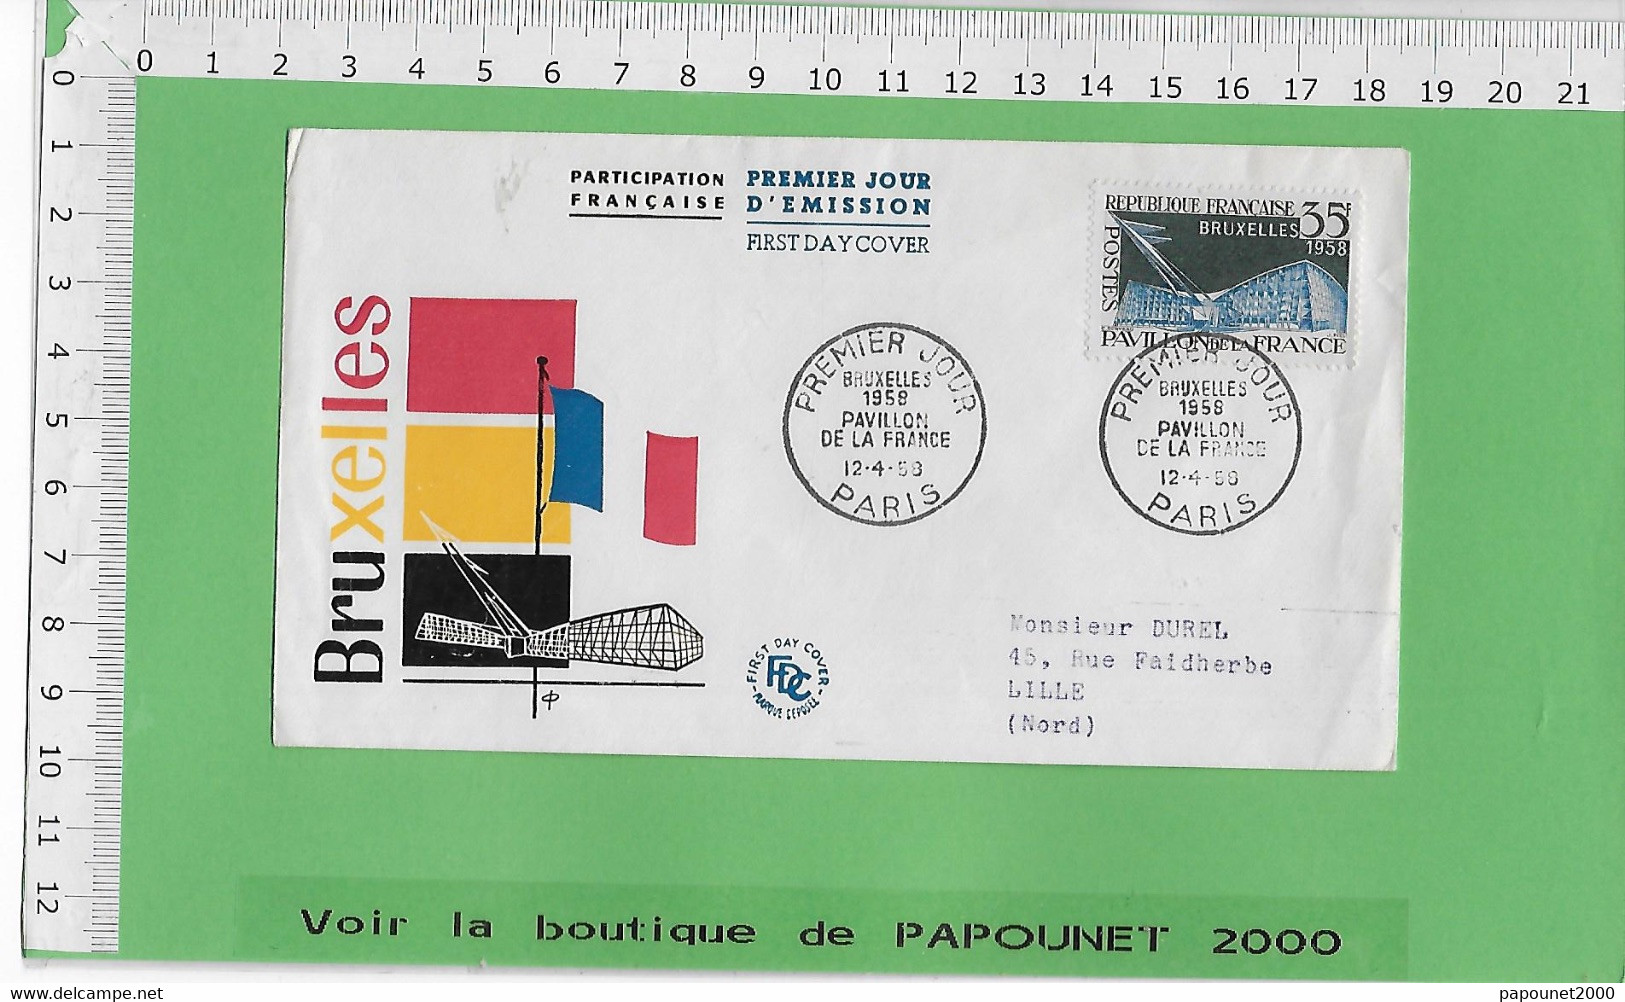 02576 - E BE04 1000-EXPO 58 : Timbre*Enveloppe /PREMIER JOUR D EMISSION : PAVILLON FRANCAIS - 1958 – Bruselas (Bélgica)